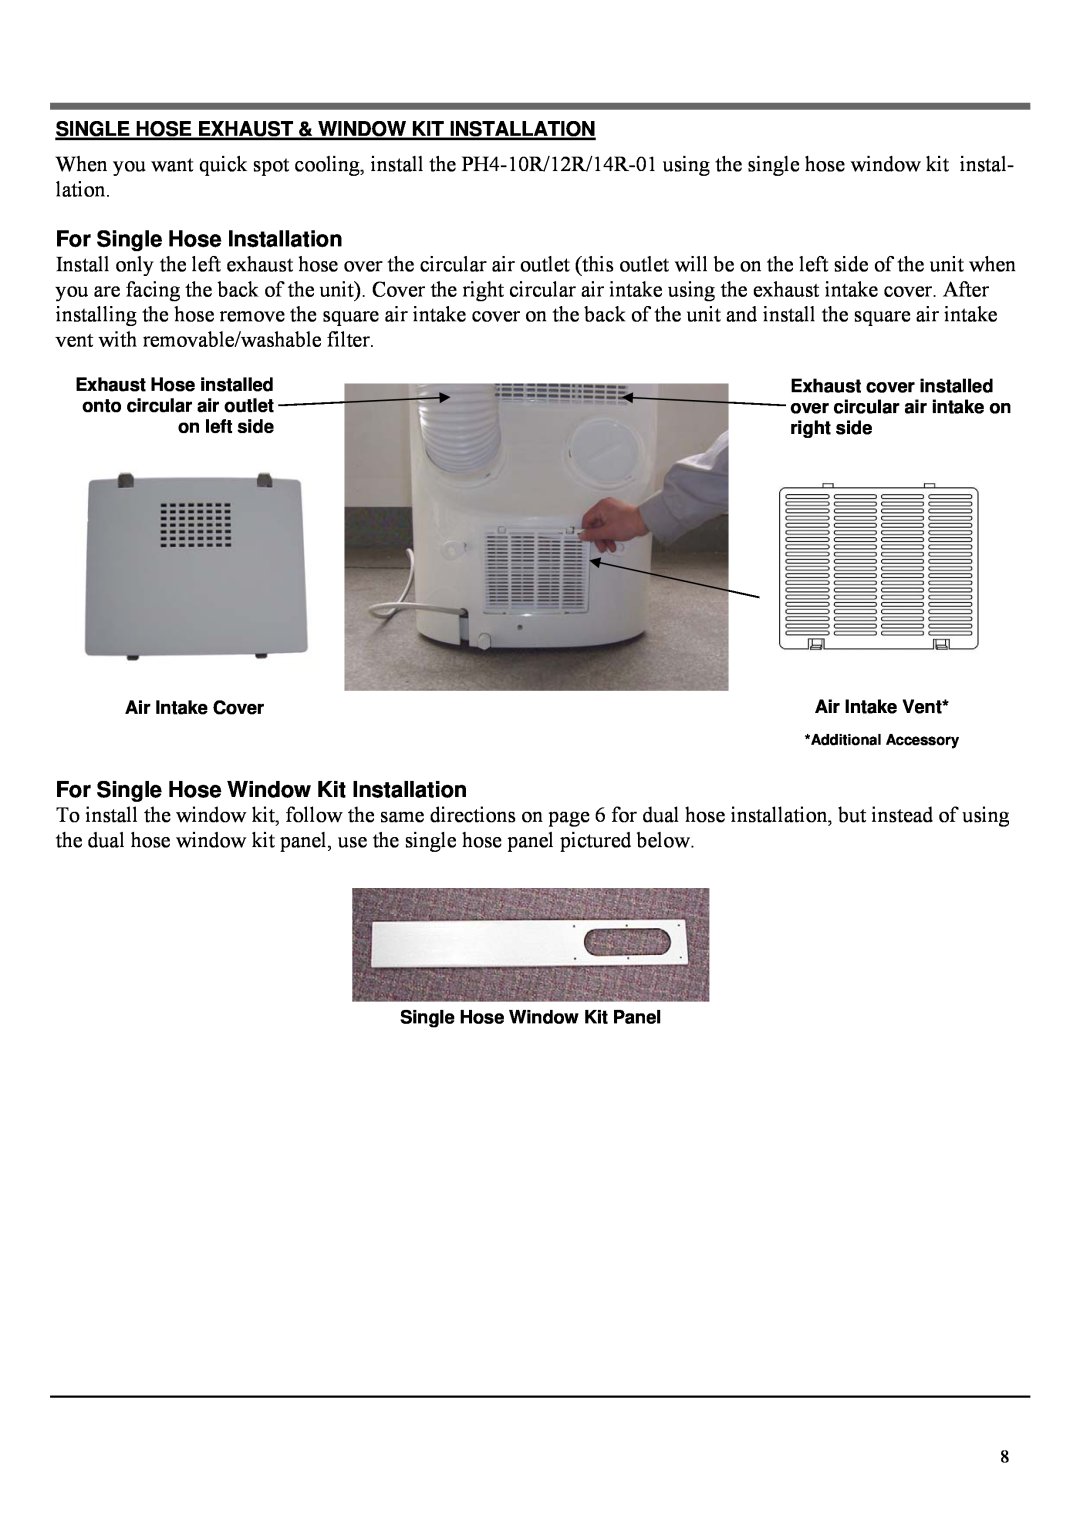 Soleus Air PH4-10R-01 manual For Single Hose Installation, For Single Hose Window Kit Installation 